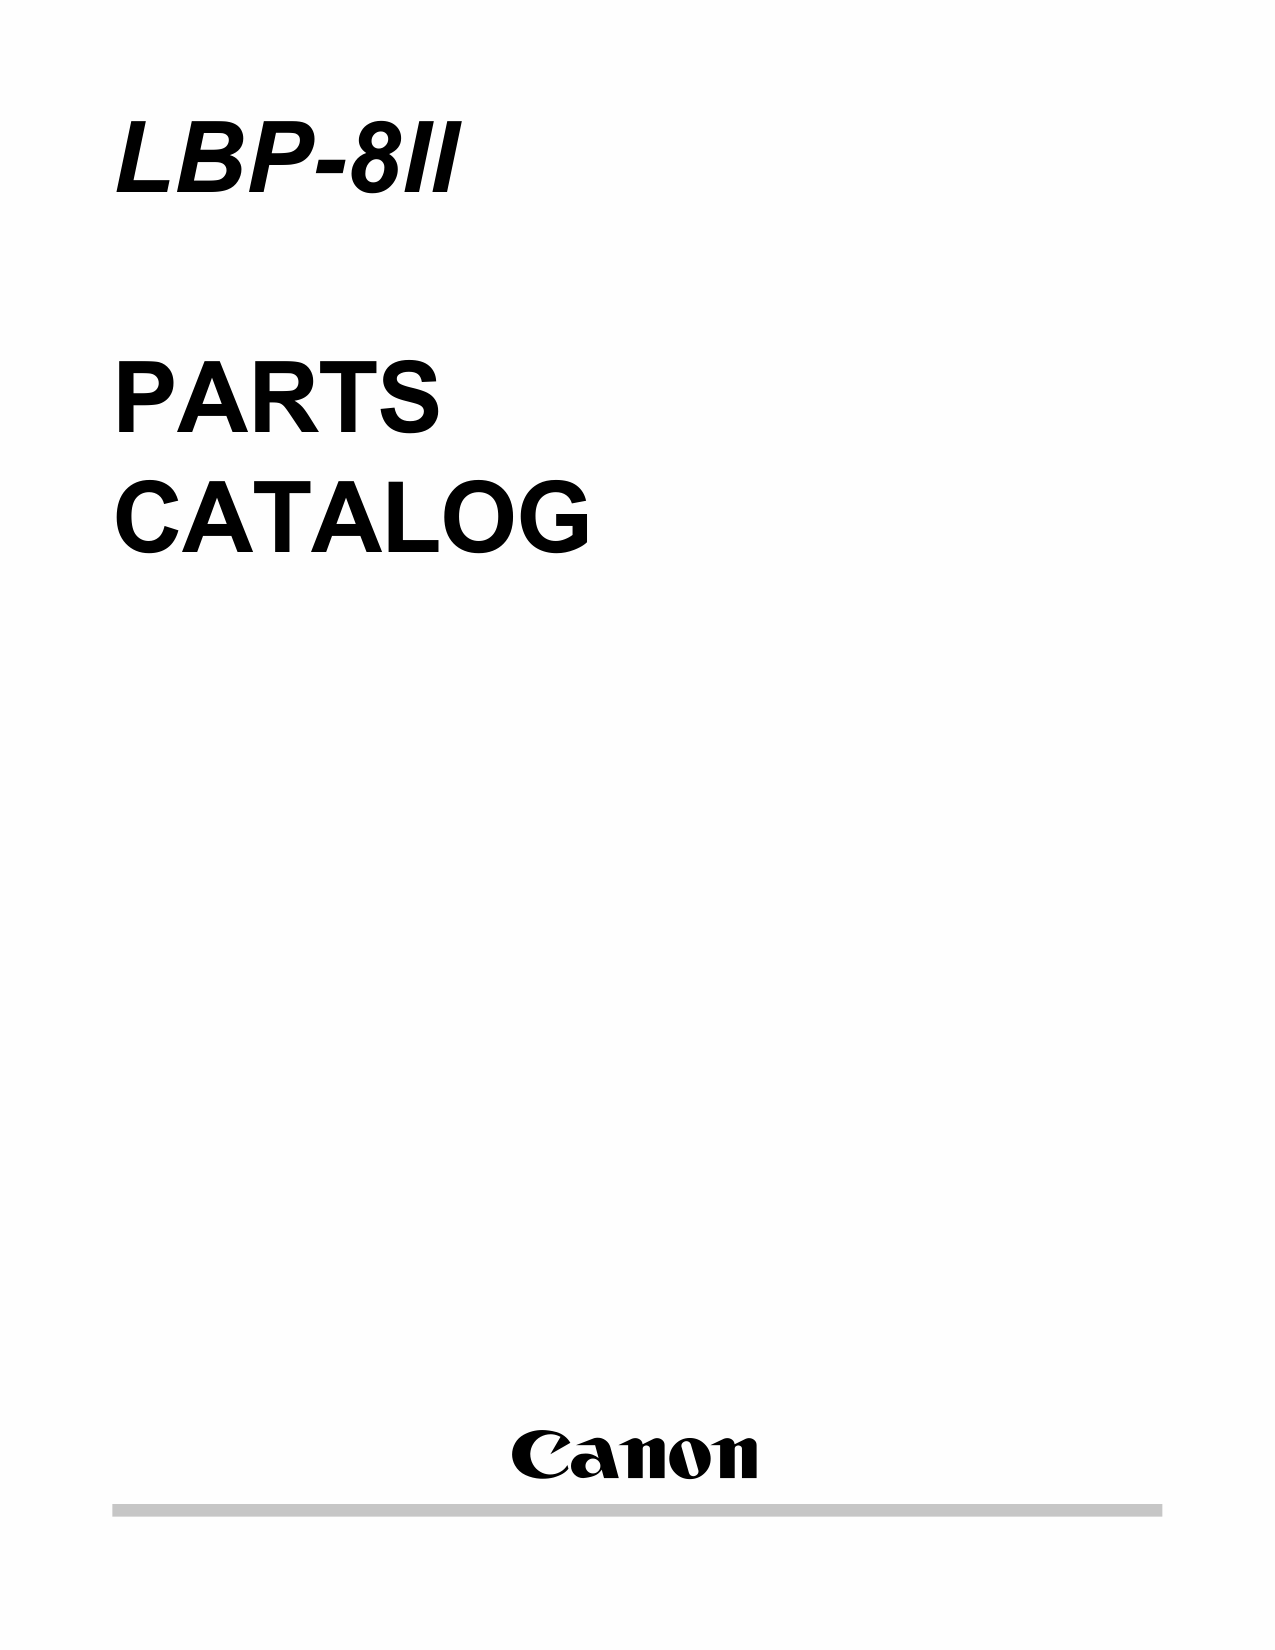 Canon imageCLASS LBP-8II Parts Catalog Manual-1